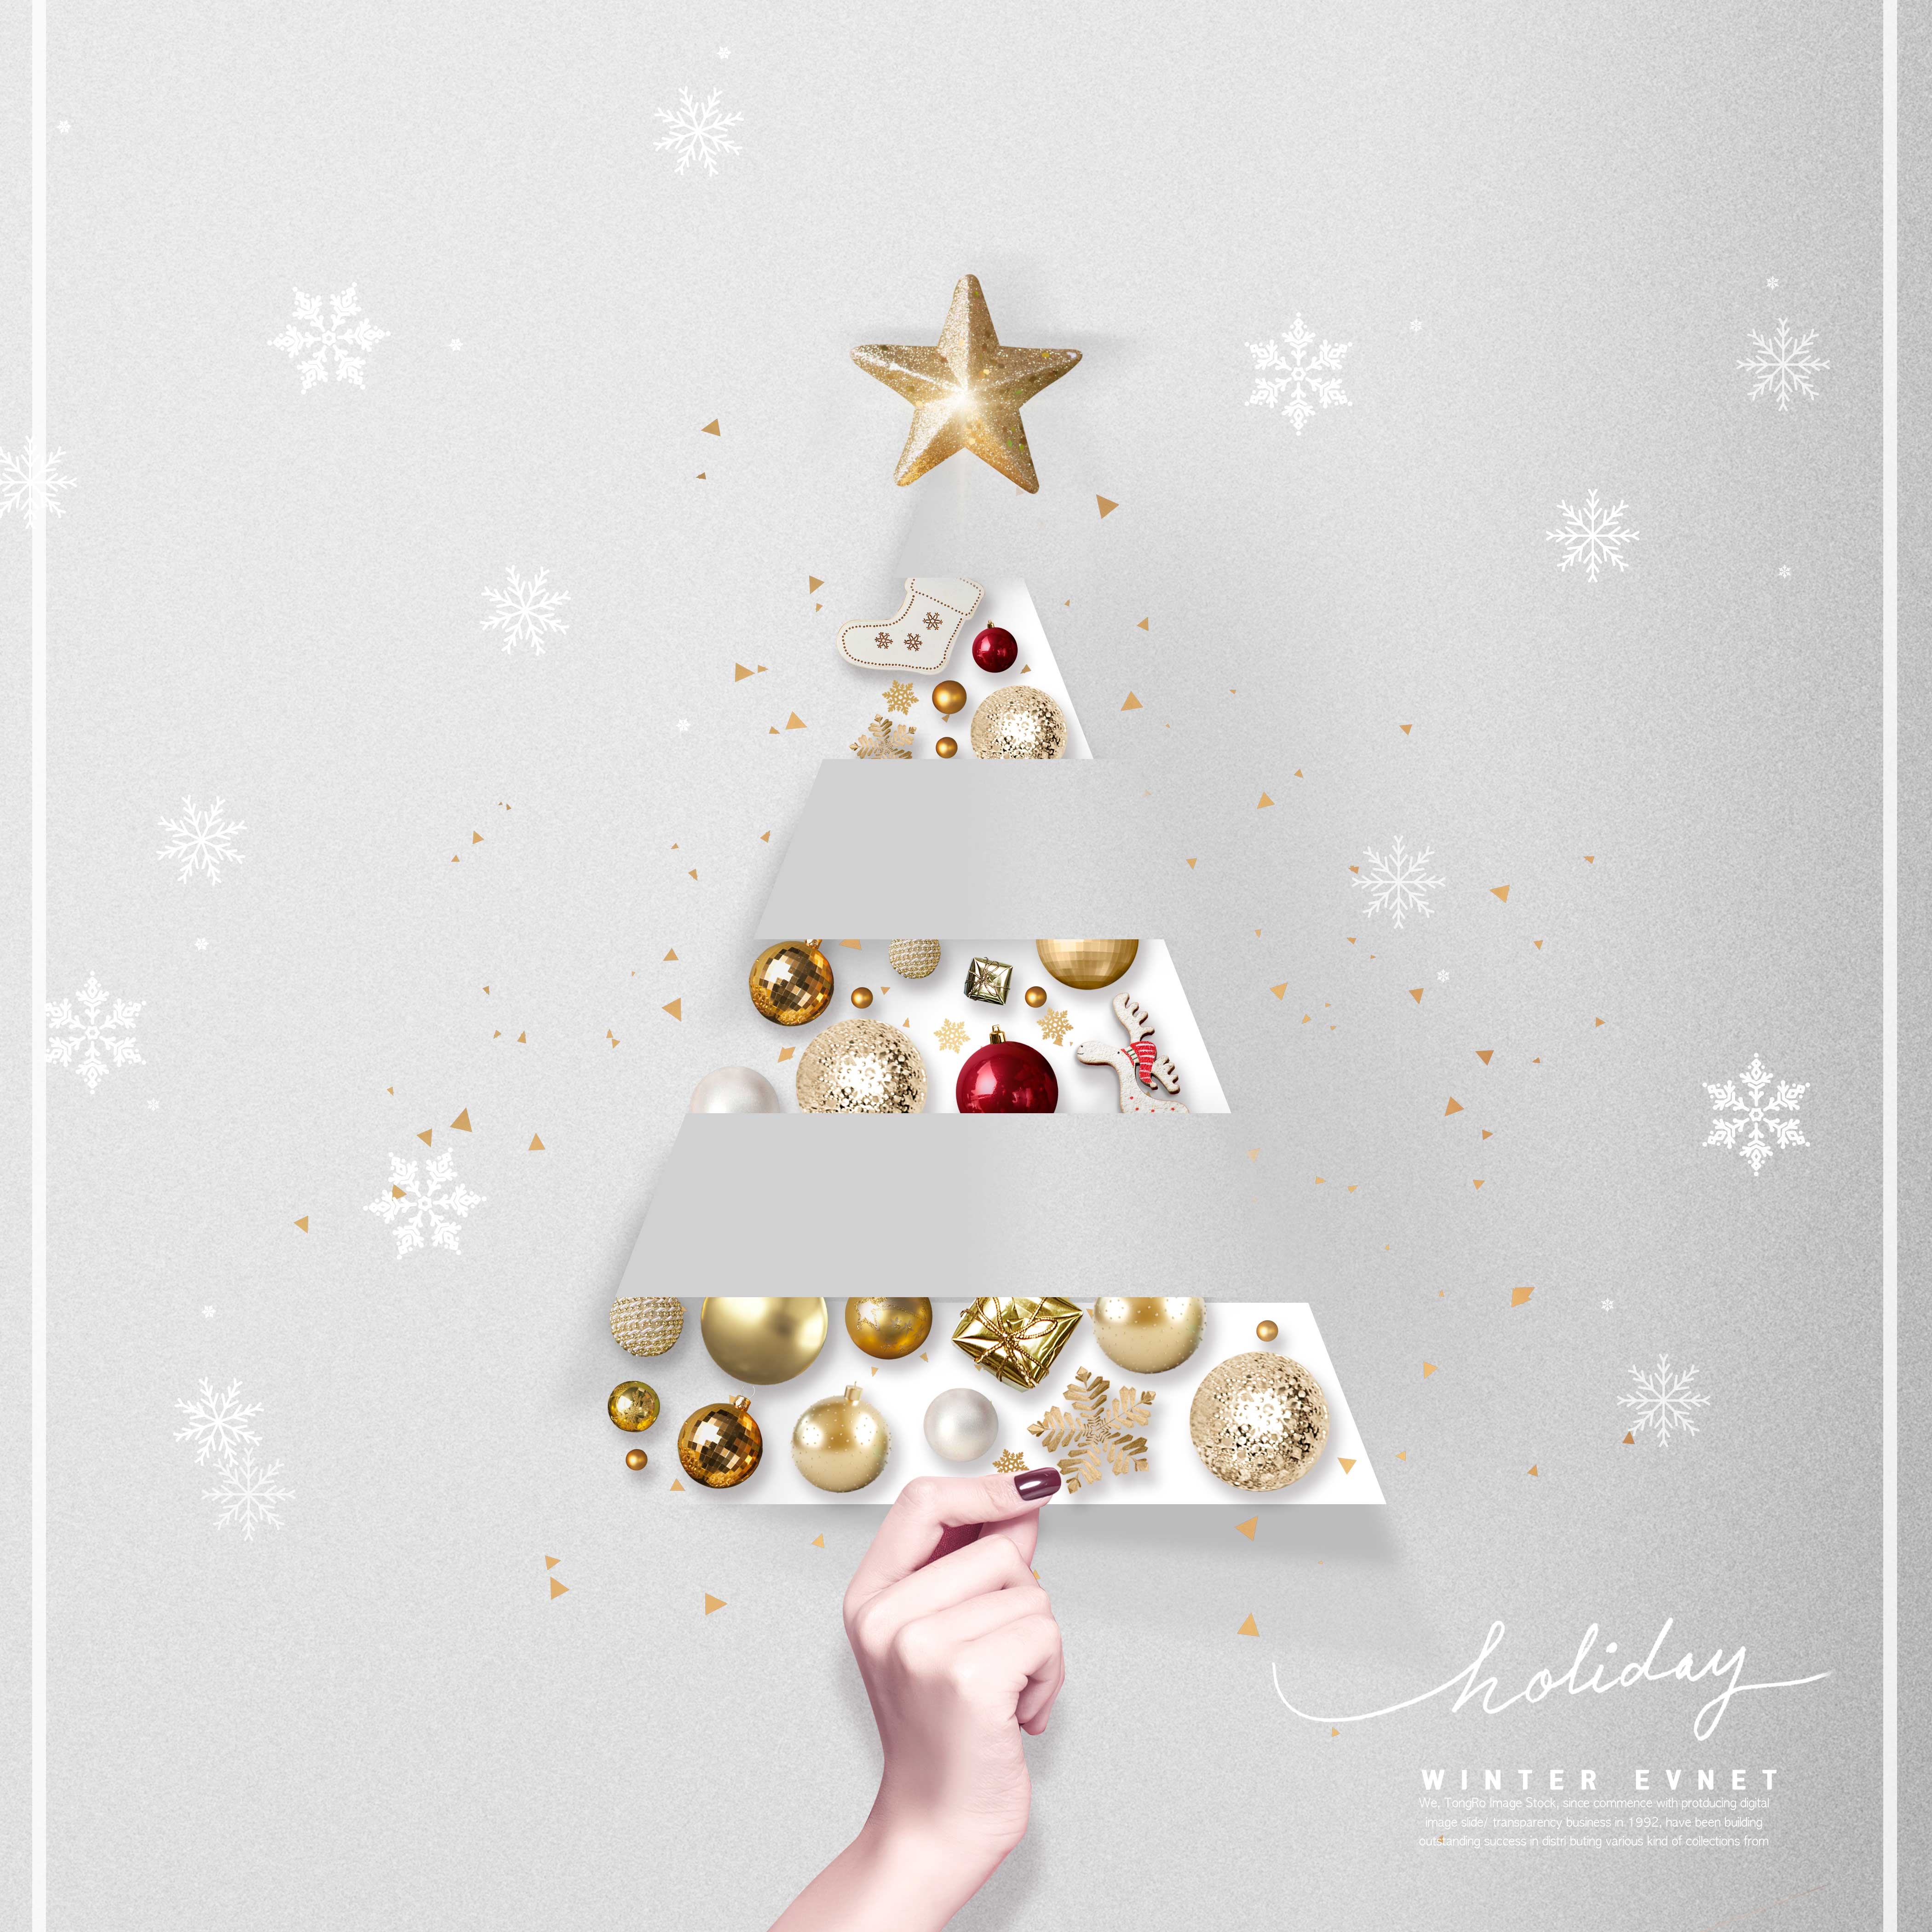 冬季促销圣诞装饰元素海报设计素材设计素材模板